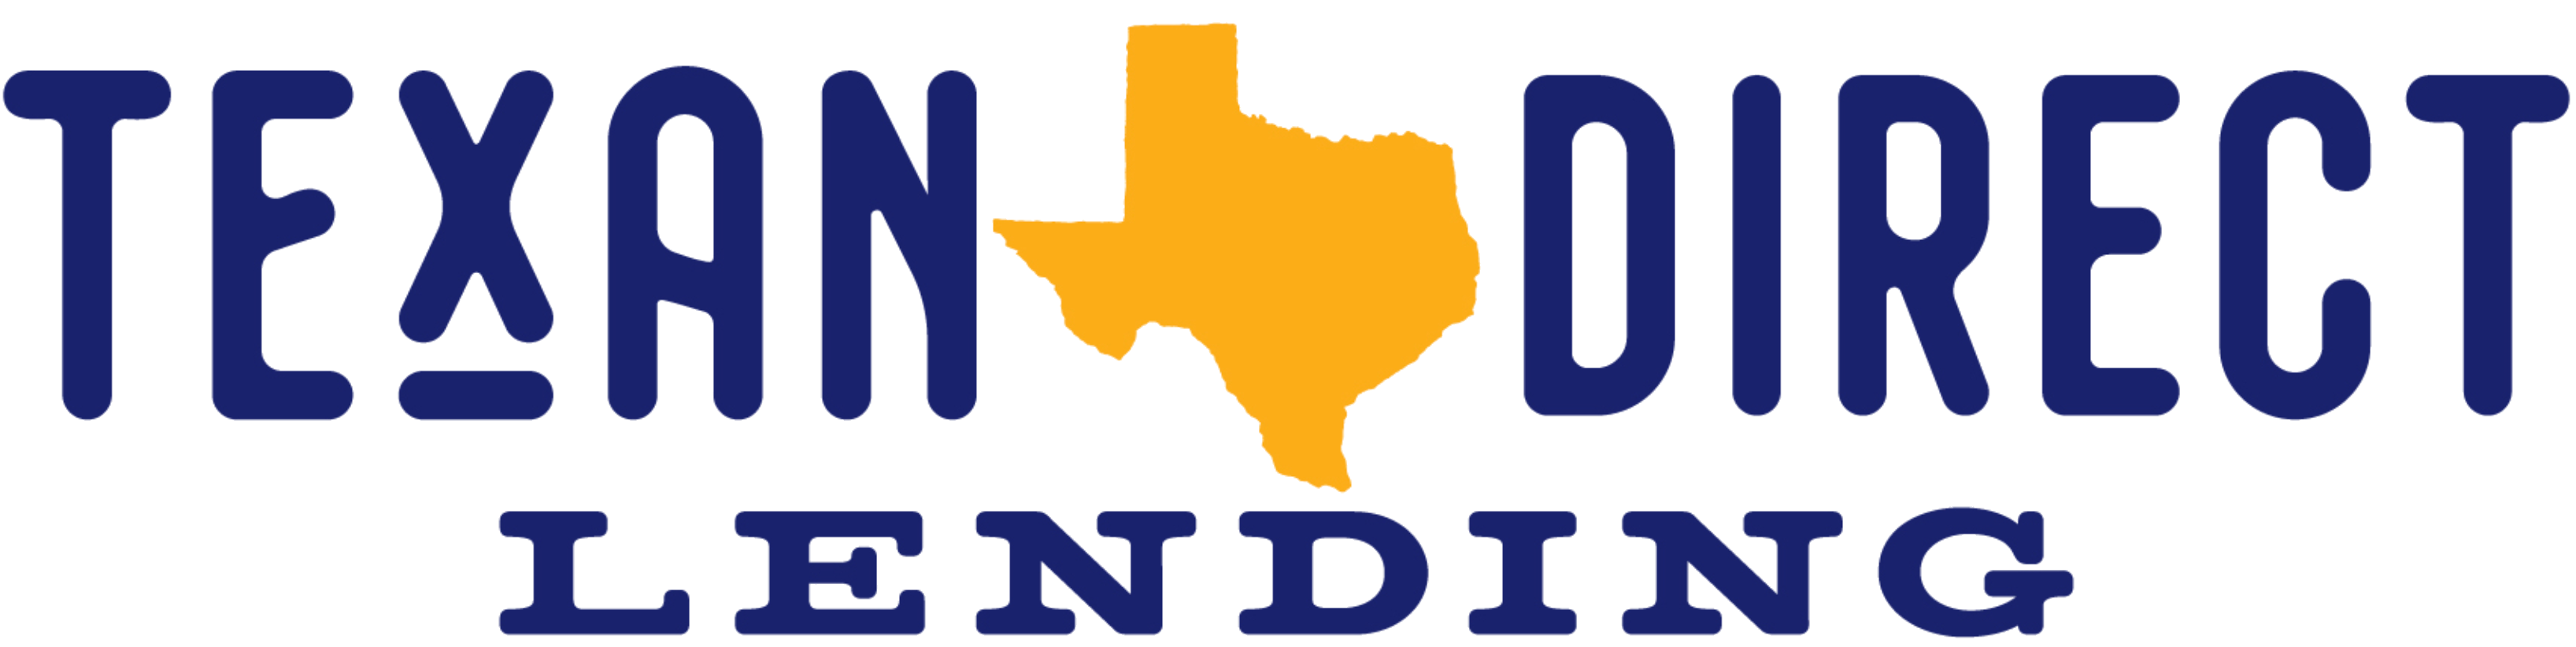 Texan Direct Lending, LLC